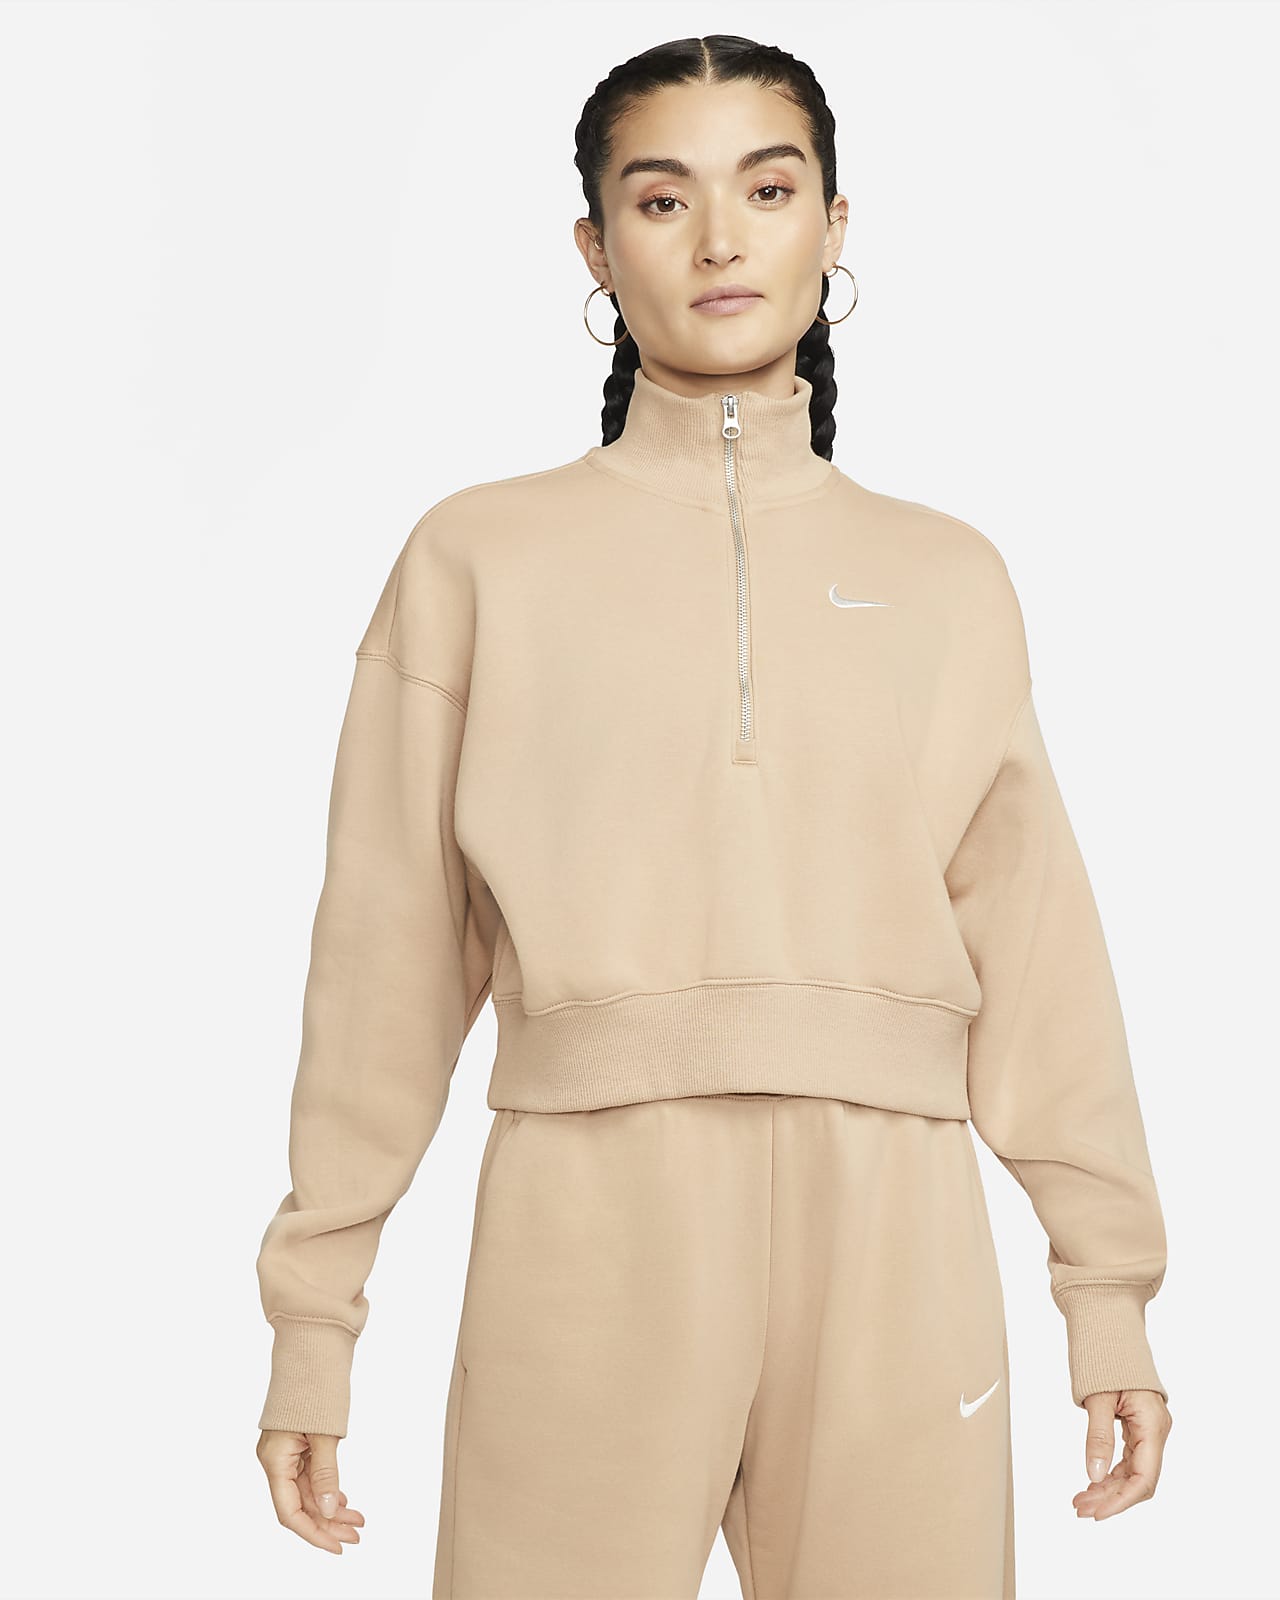 Nike Sportswear Phoenix Fleece Yarım Fermuarlı Crop Kadın Sweatshirt'ü